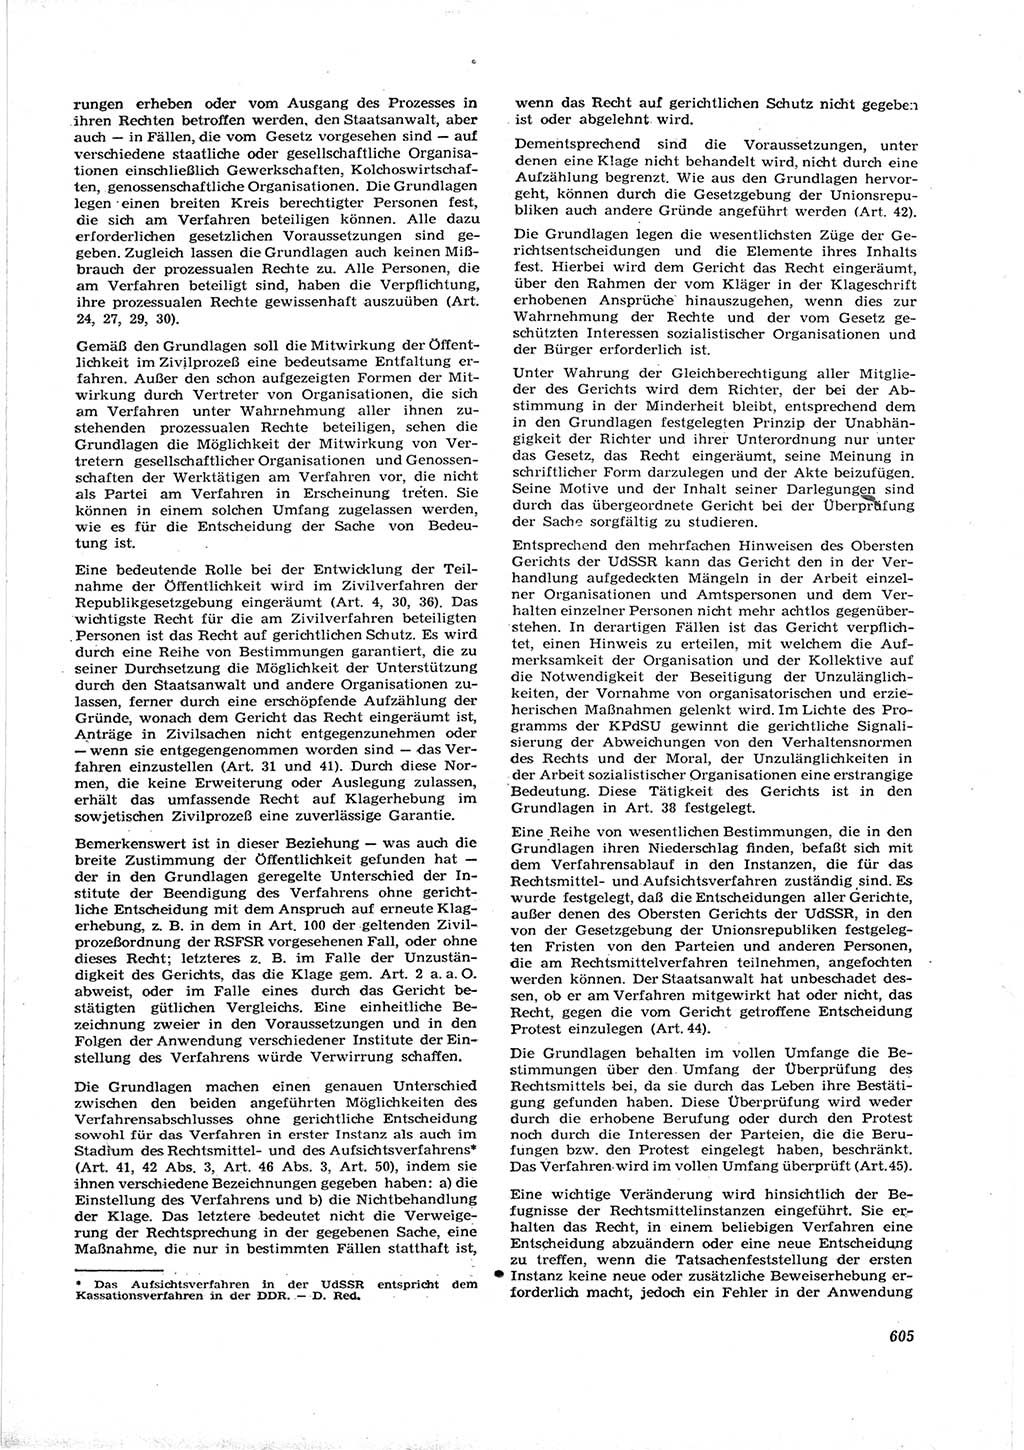 Neue Justiz (NJ), Zeitschrift für Recht und Rechtswissenschaft [Deutsche Demokratische Republik (DDR)], 16. Jahrgang 1962, Seite 605 (NJ DDR 1962, S. 605)